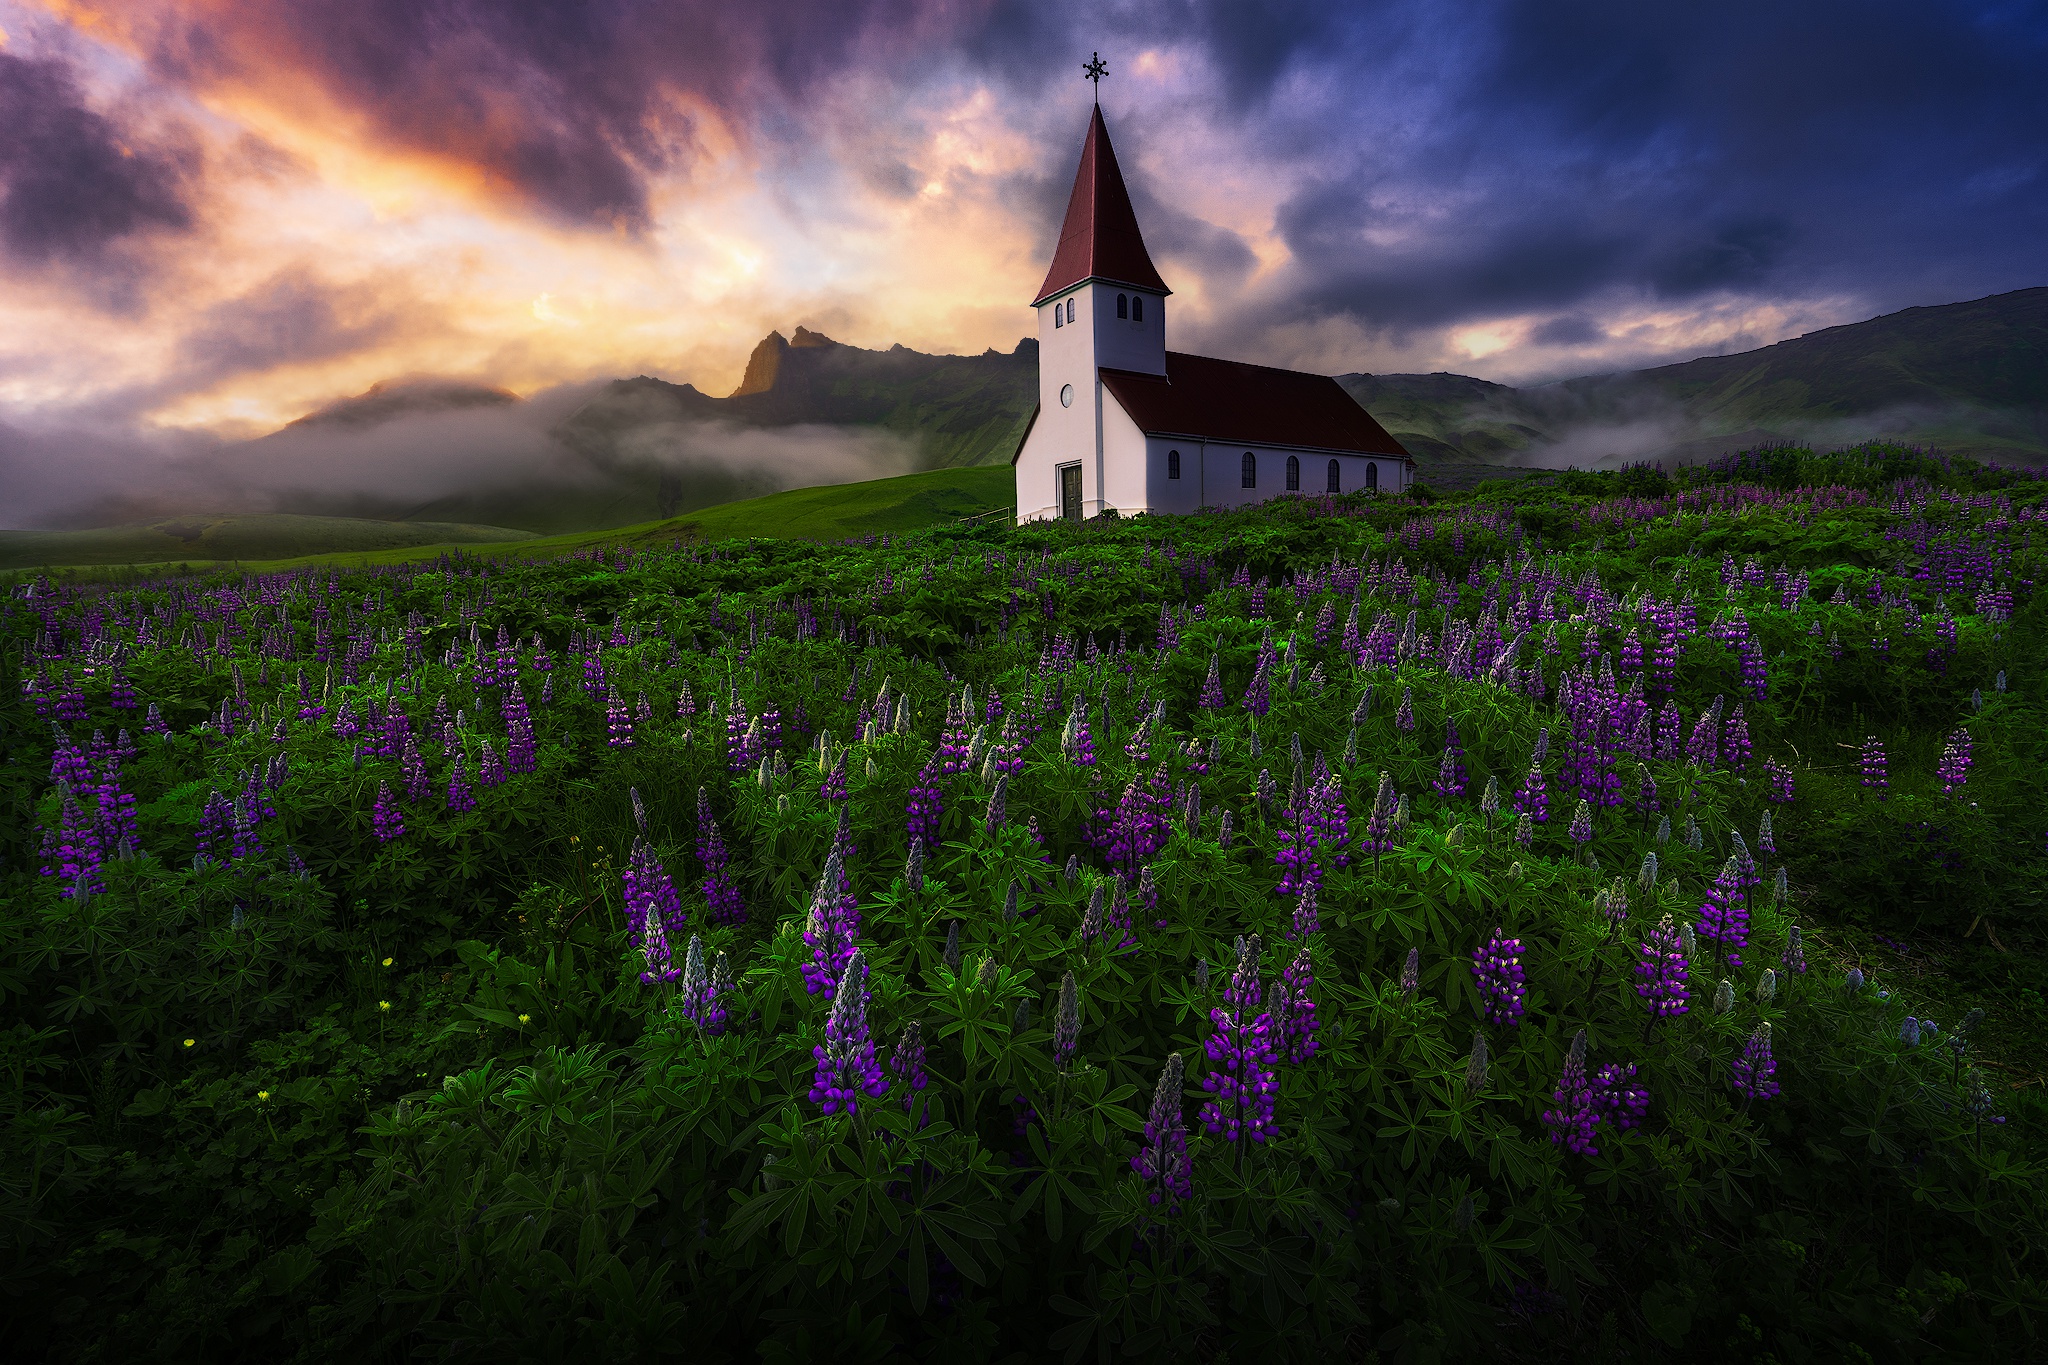 Скачать обои бесплатно Природа, Здание, Исландия, Церковь, Церкви, Фиолетовый Цветок, Религиозные картинка на рабочий стол ПК